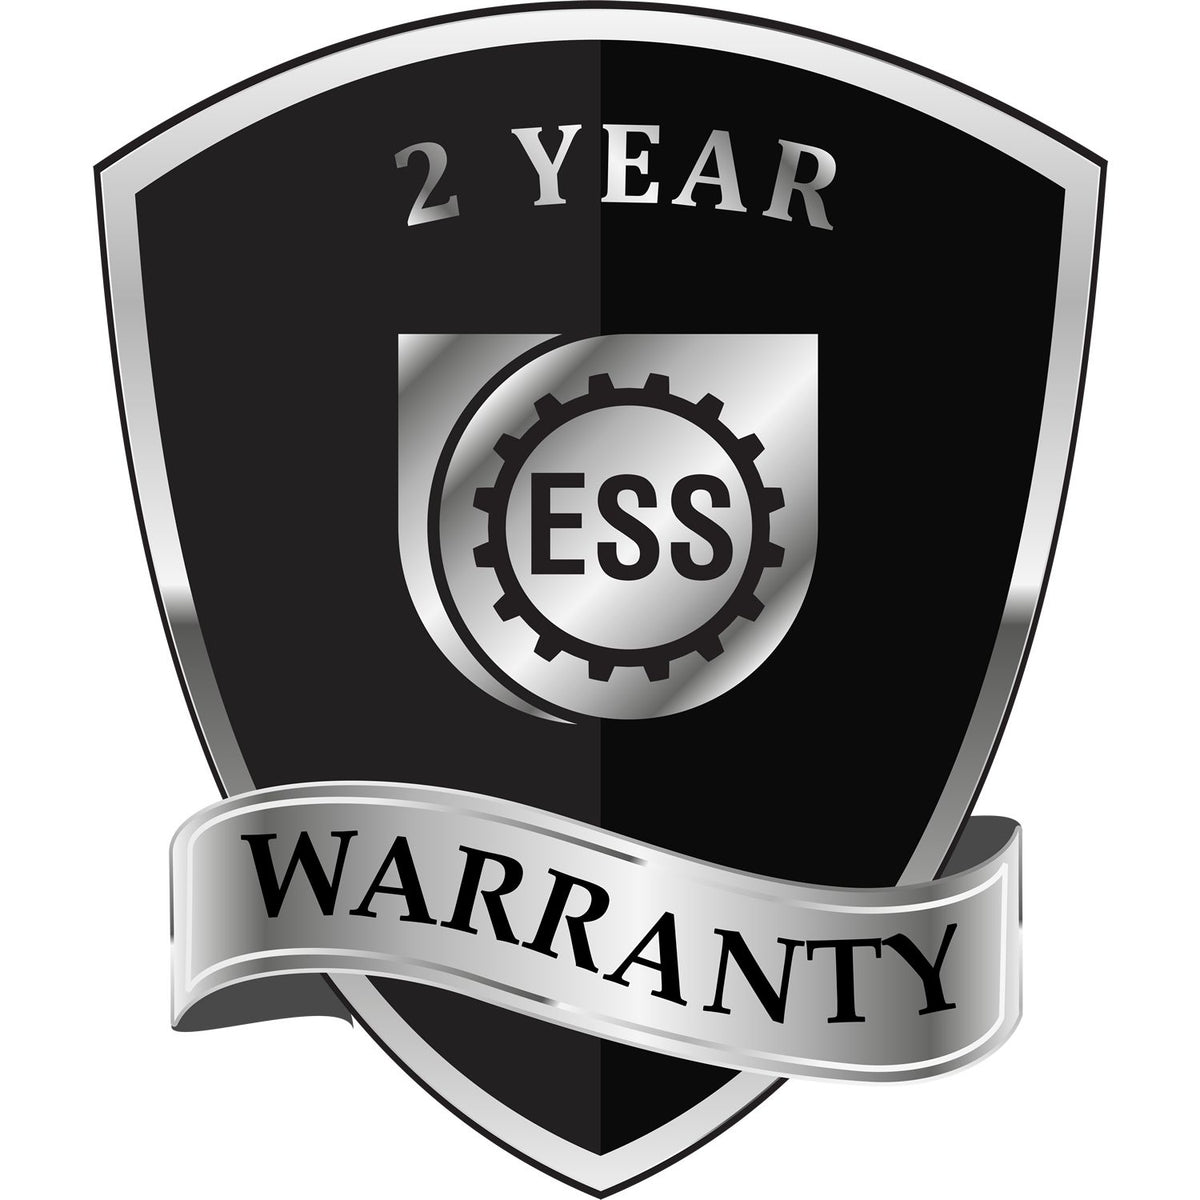 A black and silver badge or emblem showing warranty information for the Gift Nebraska Land Surveyor Seal